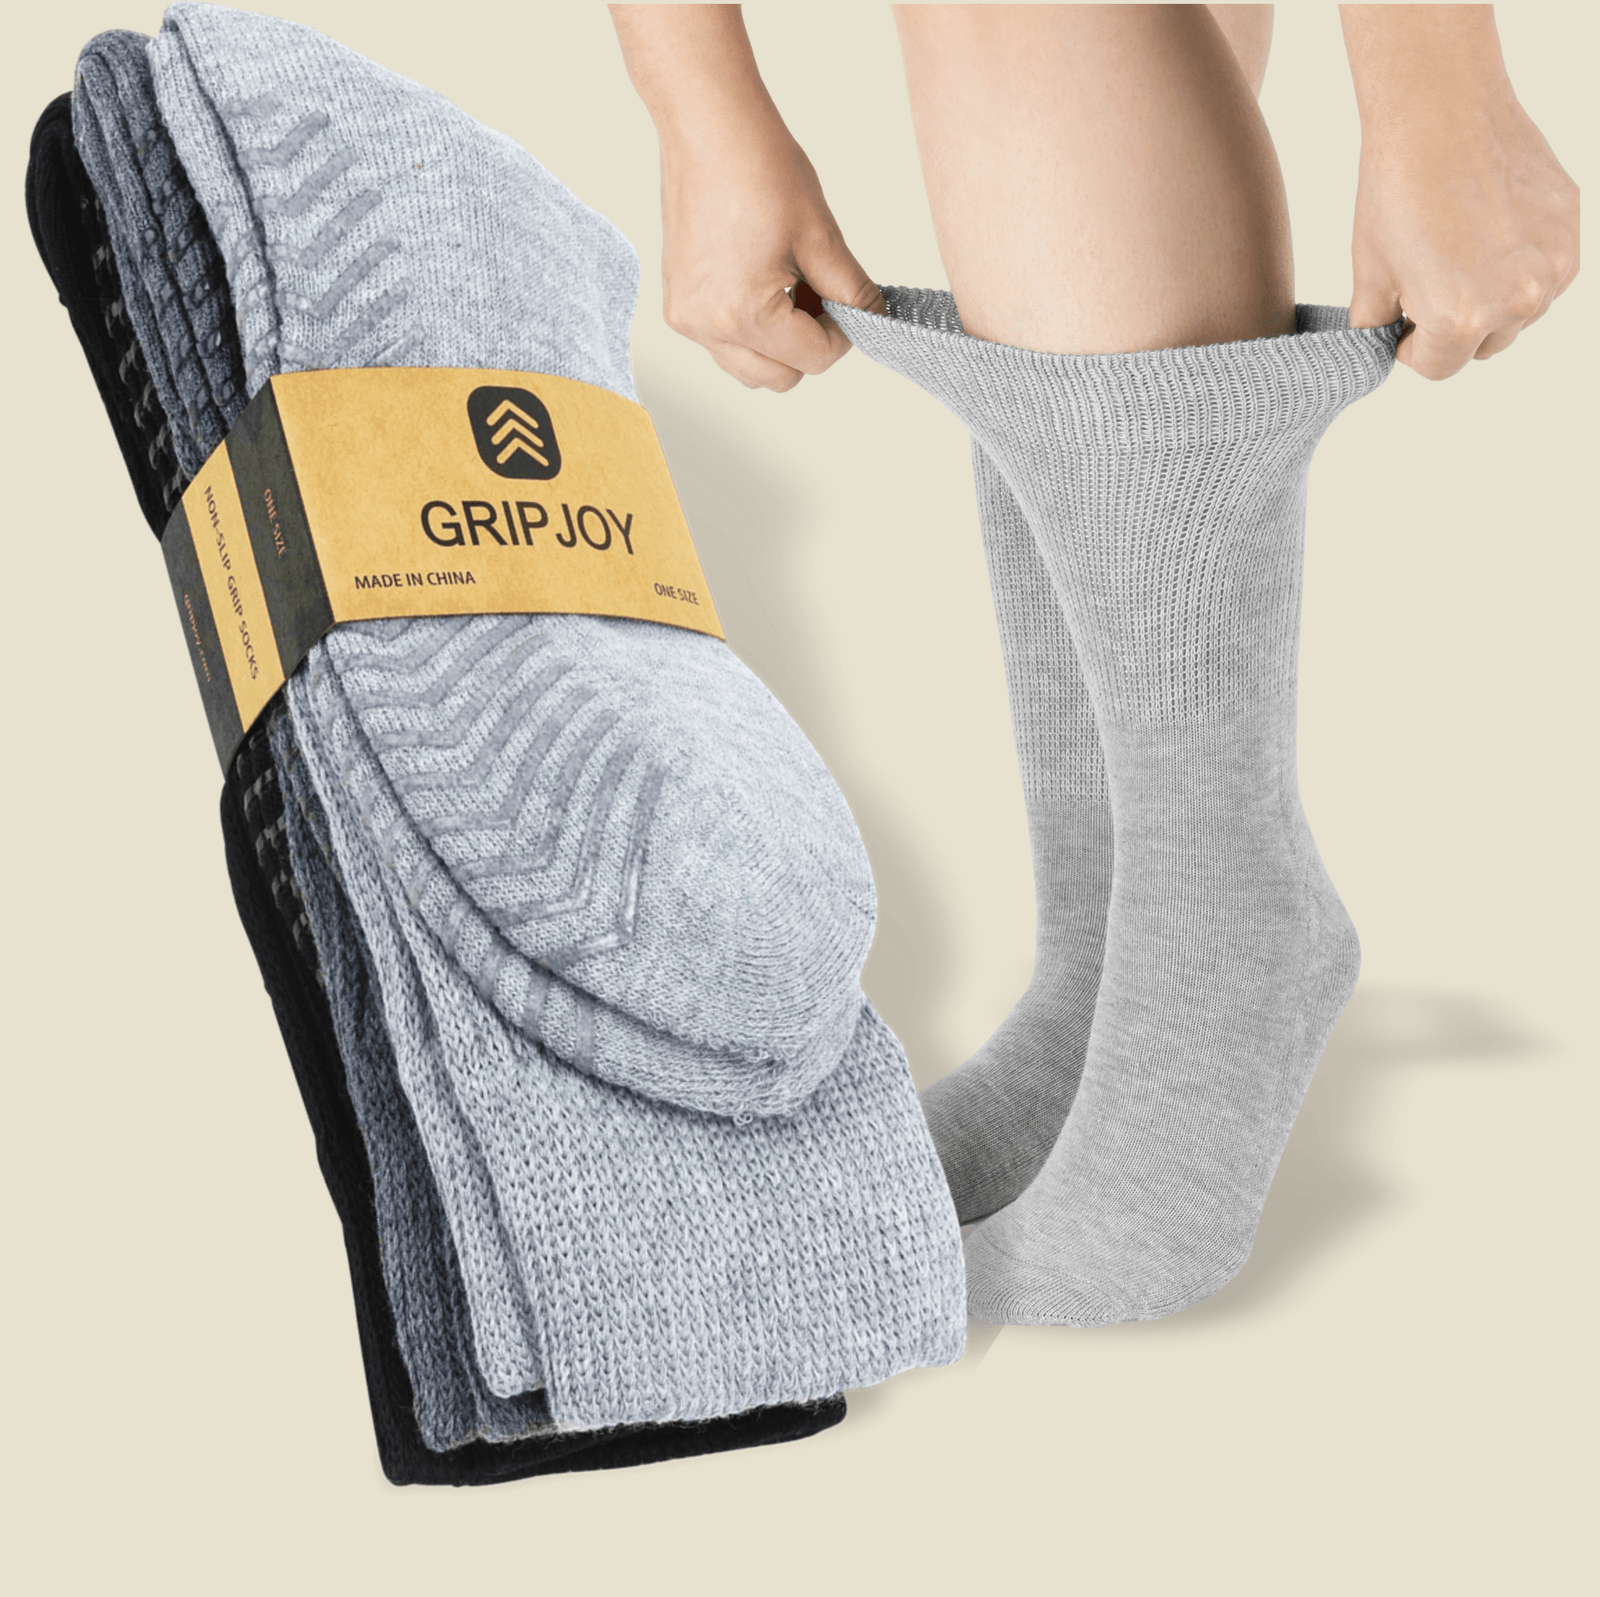 BSWAJIOJIO Fuzzy Grip Socks Socks With Grippers For Women Cozy